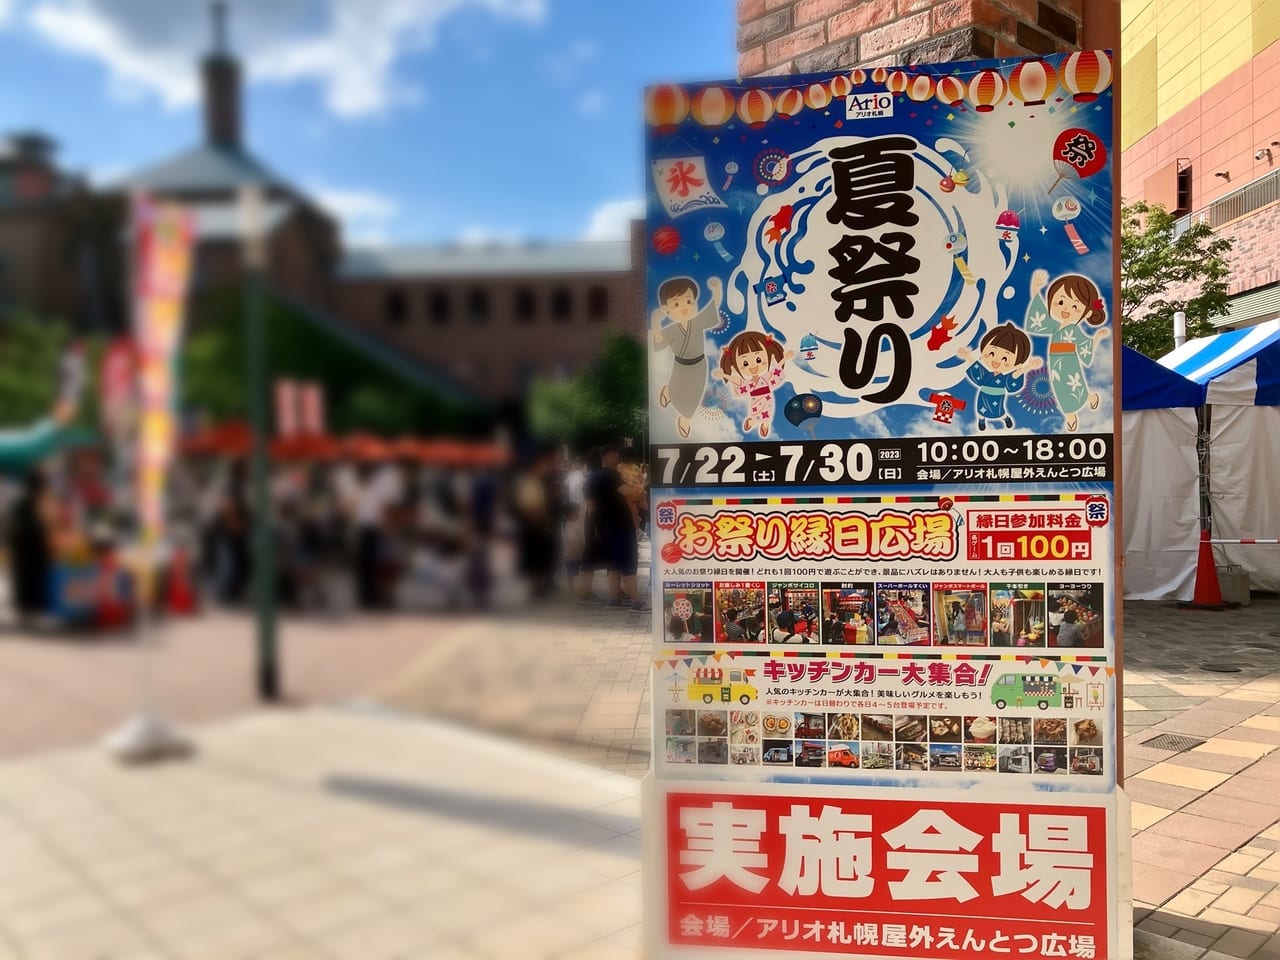 ちびっこ集まれ！ 100円であそべる縁日がいっぱいあるよ。「アリオ札幌」で夏祭り開催中。